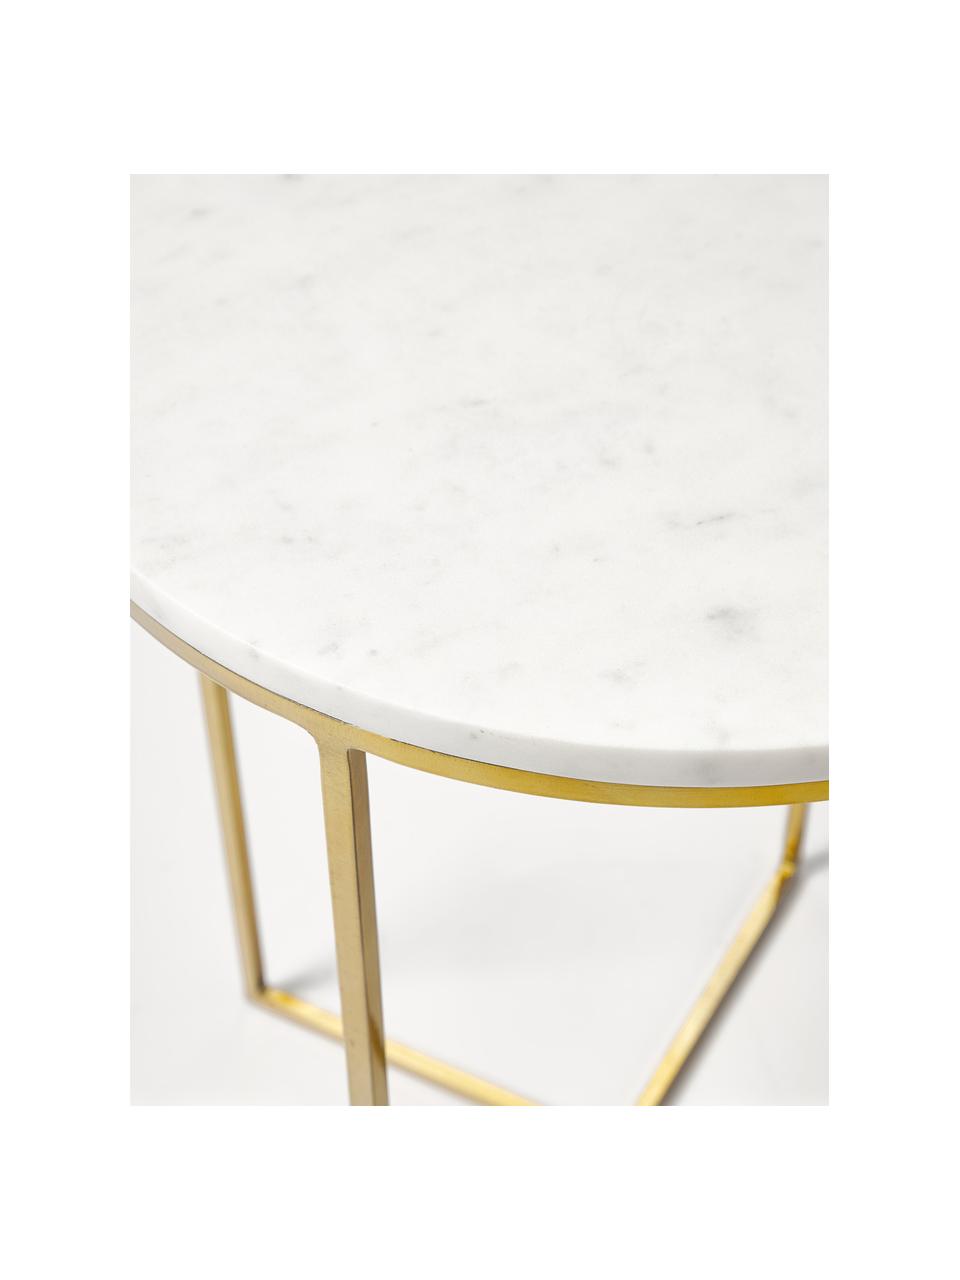 Runder Marmor-Beistelltisch Alys, Tischplatte: Marmor, Gestell: Metall, pulverbeschichtet, Weiß marmoriert, Goldfarben, Ø 40 x H 50 cm